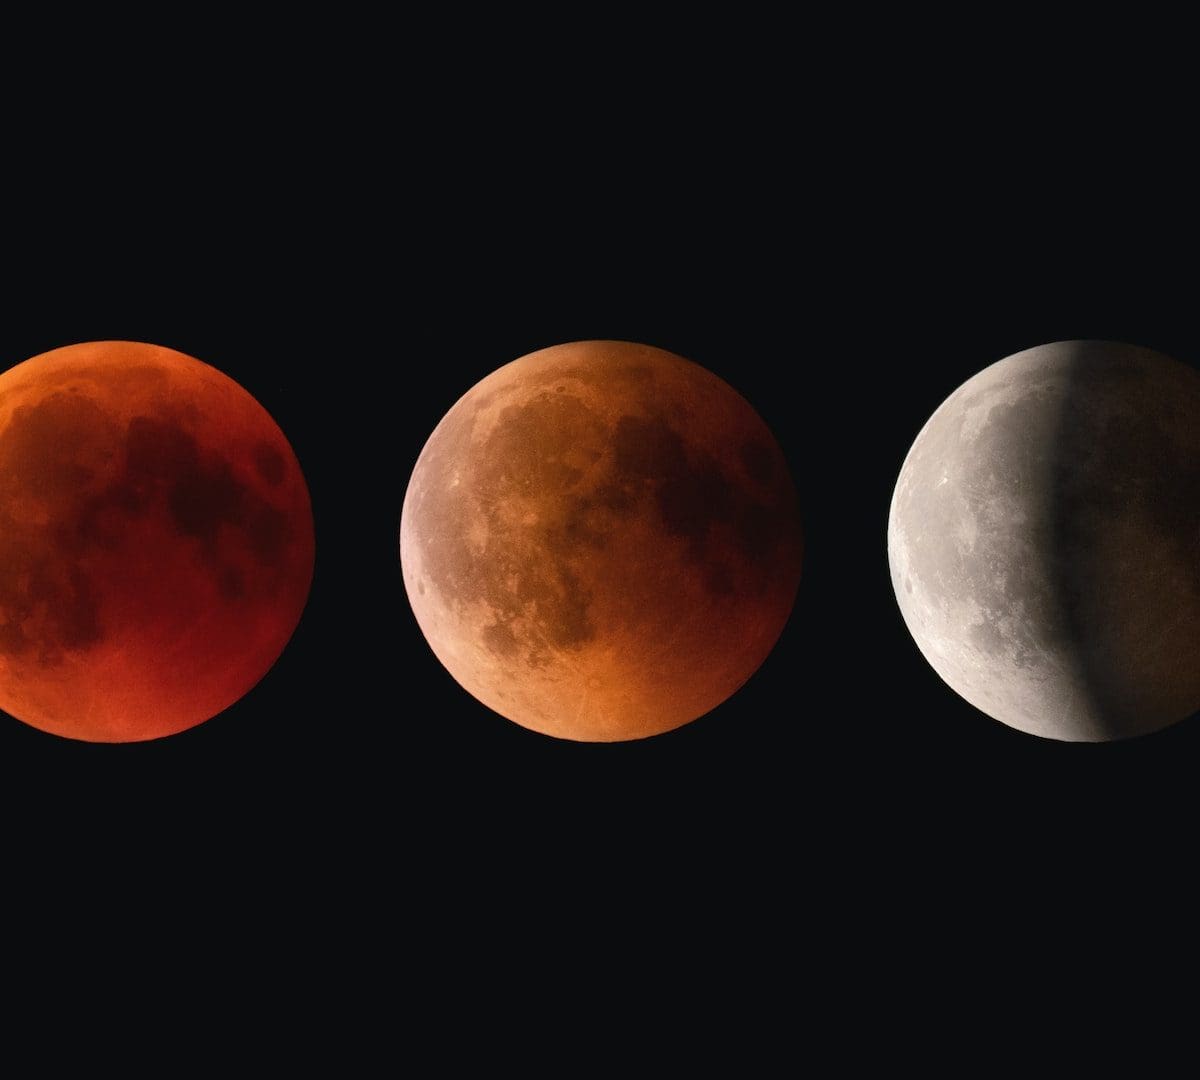 Lunar eclipse - Schauinsland, Freiburg, Germany - Credit: Claudio Testa, Unsplash